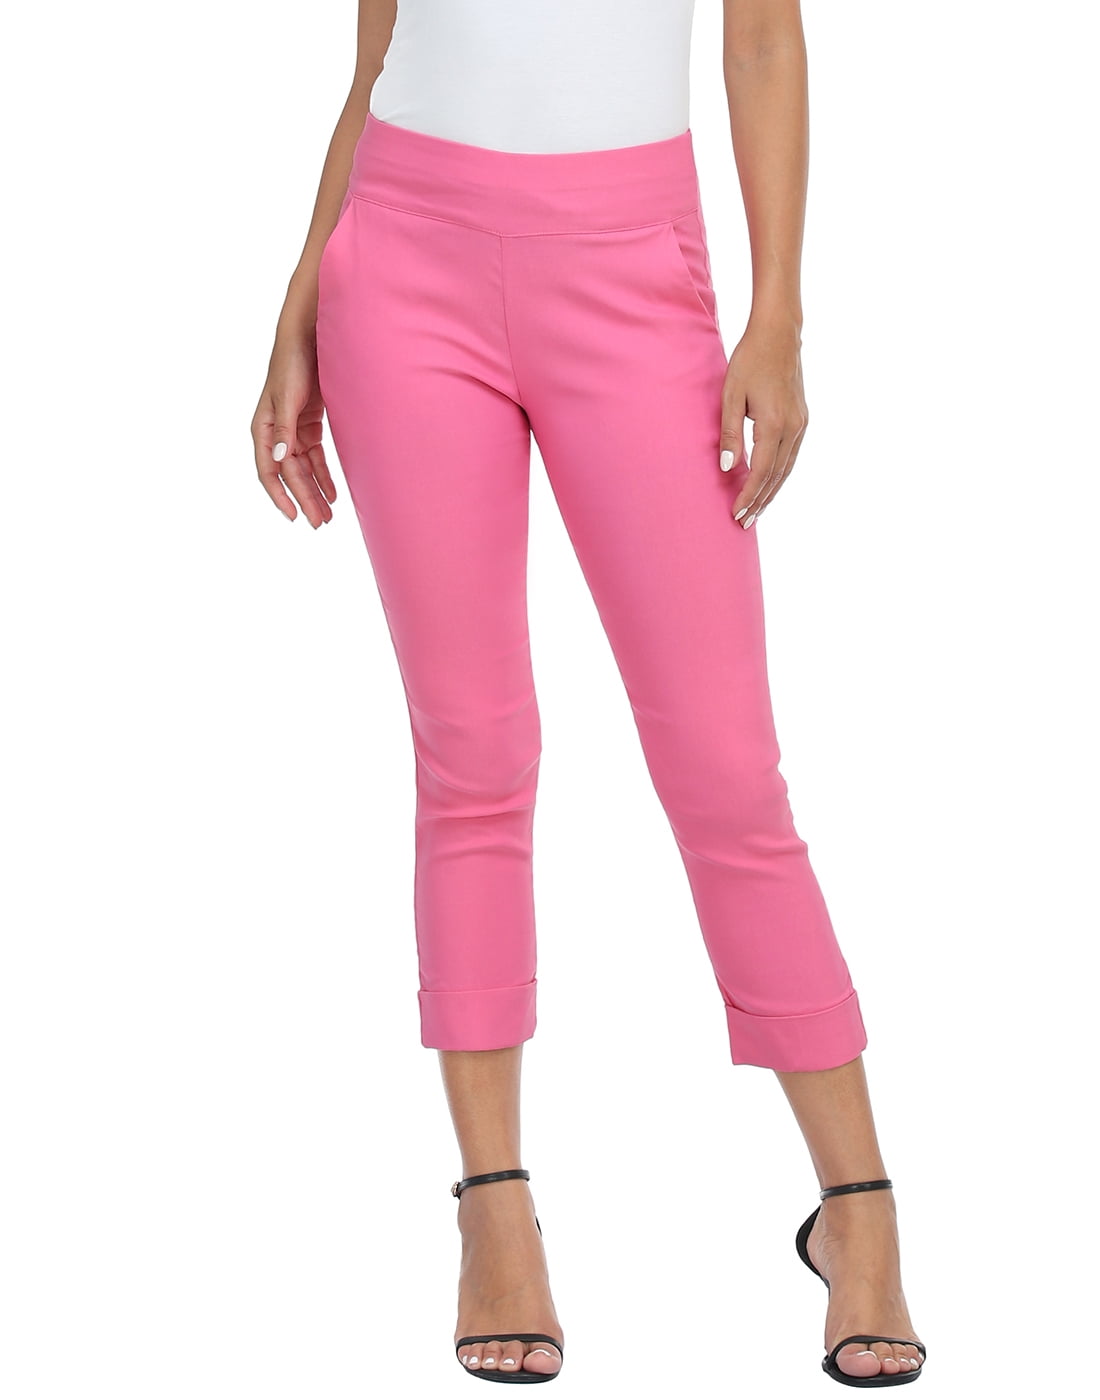 Buy LGC Lace Capri Hot Pink XL at Amazonin